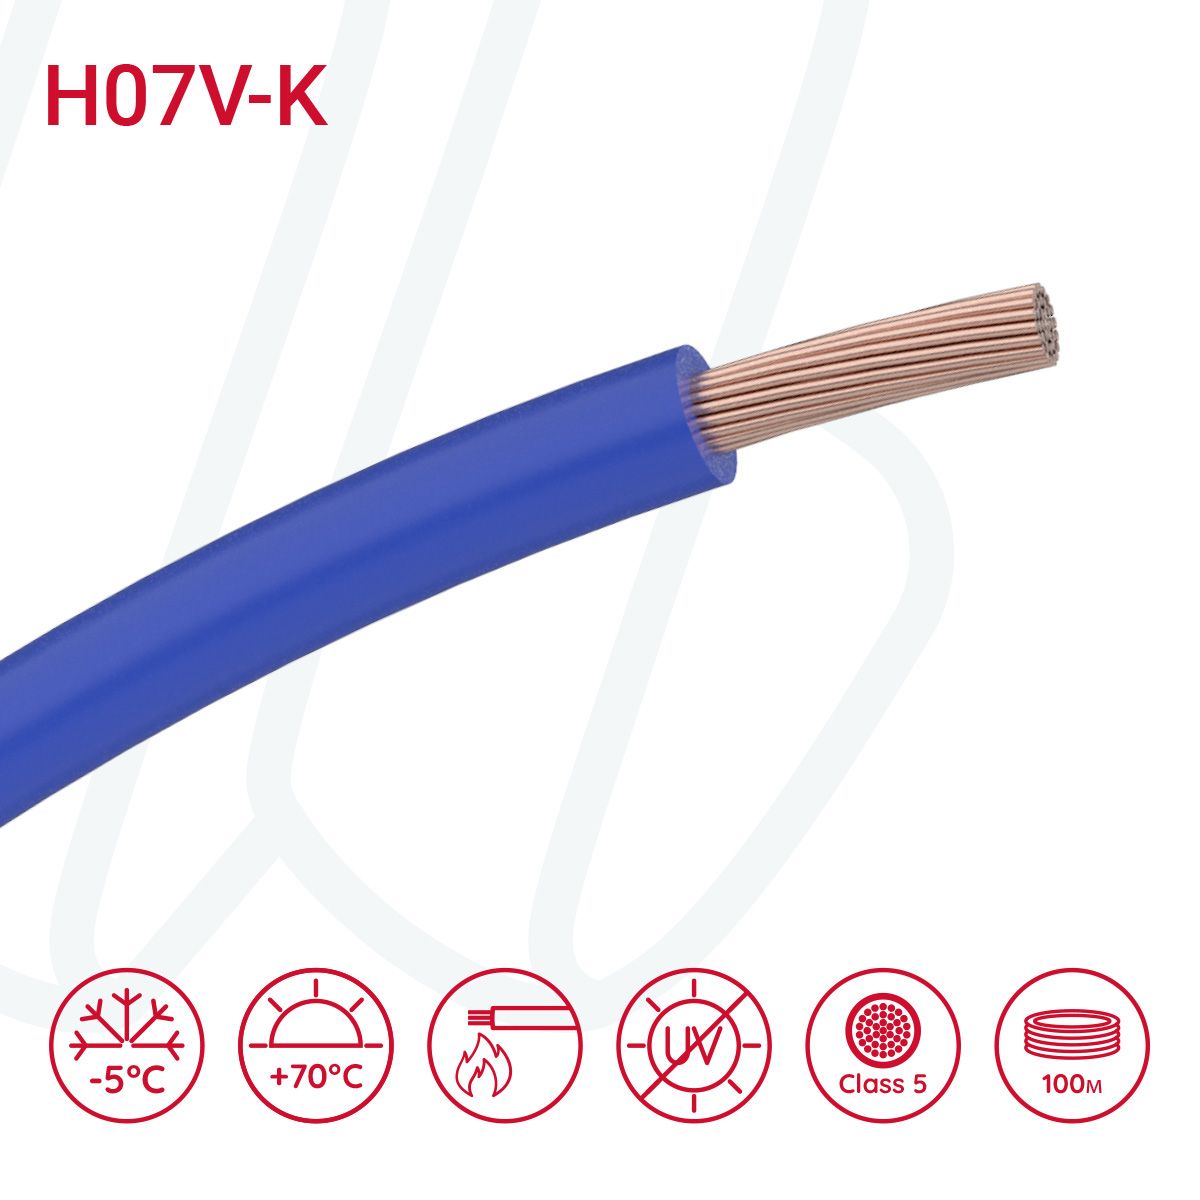 Провід монтажний гнучкий H07V-K 2.5 мм² темно-синій, 01, 2.5